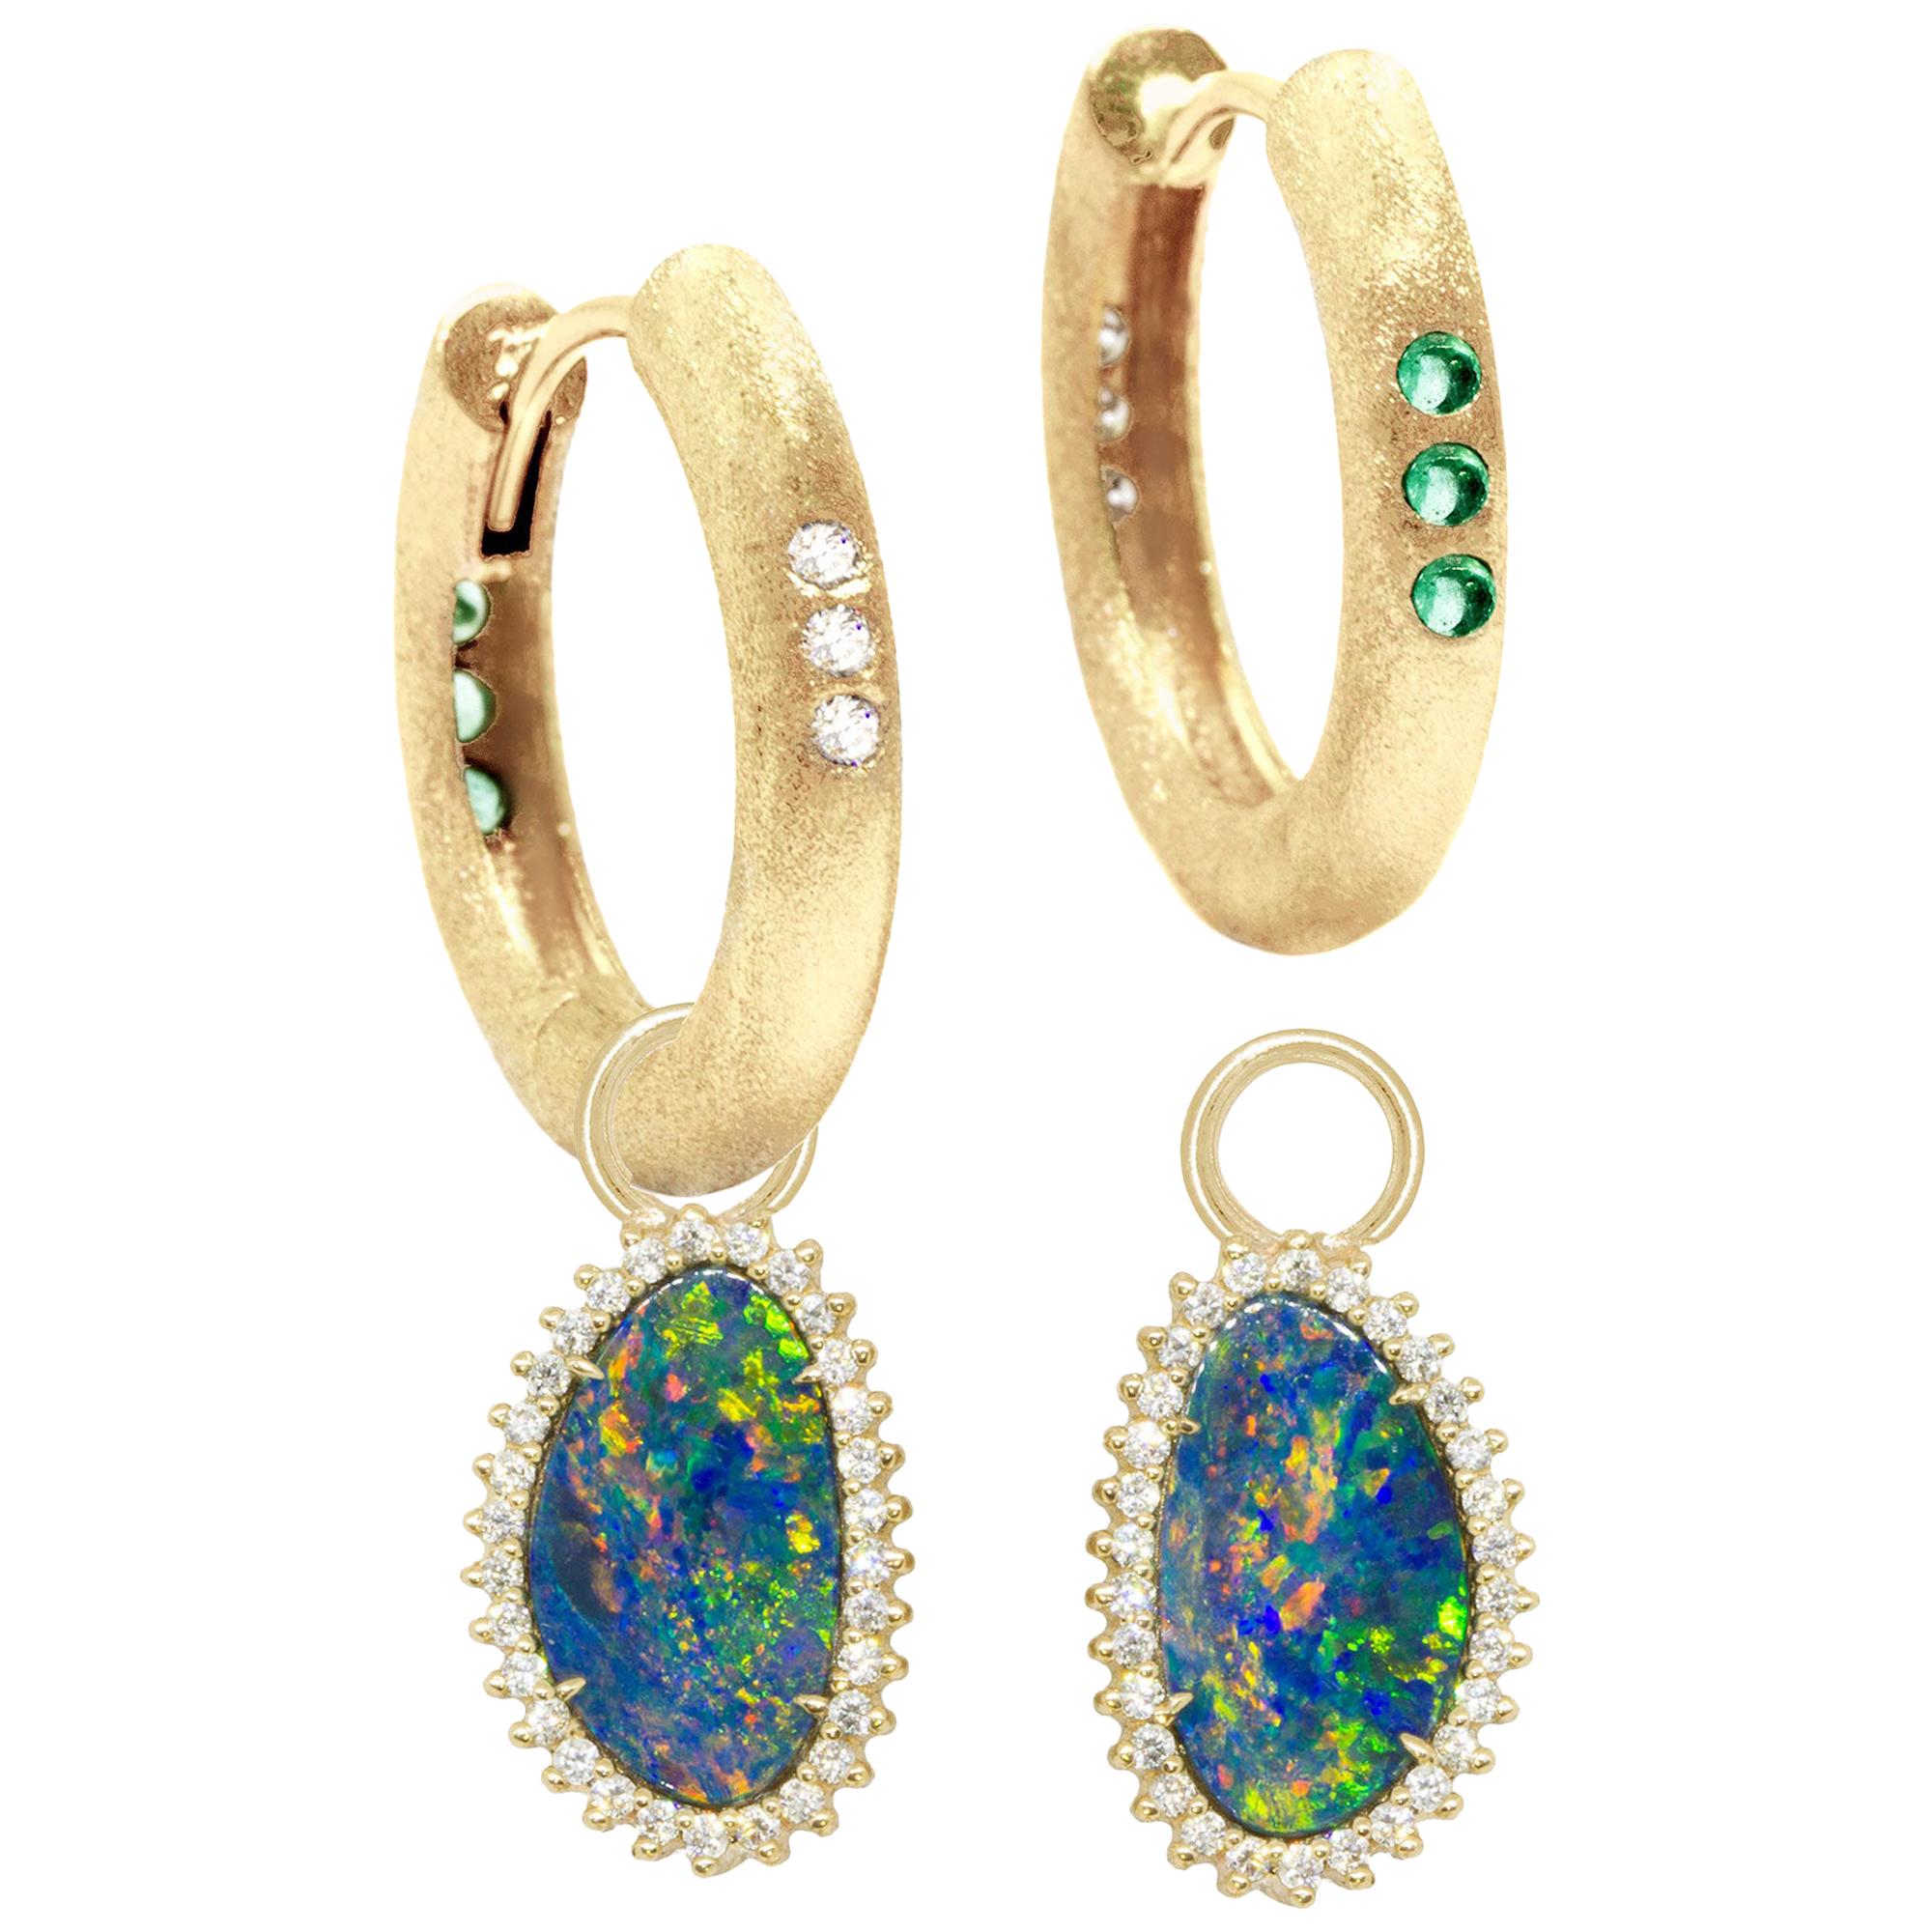 Organic Opal Charms and The Zen Gold 18 Karat Reversible Huggies Earrings